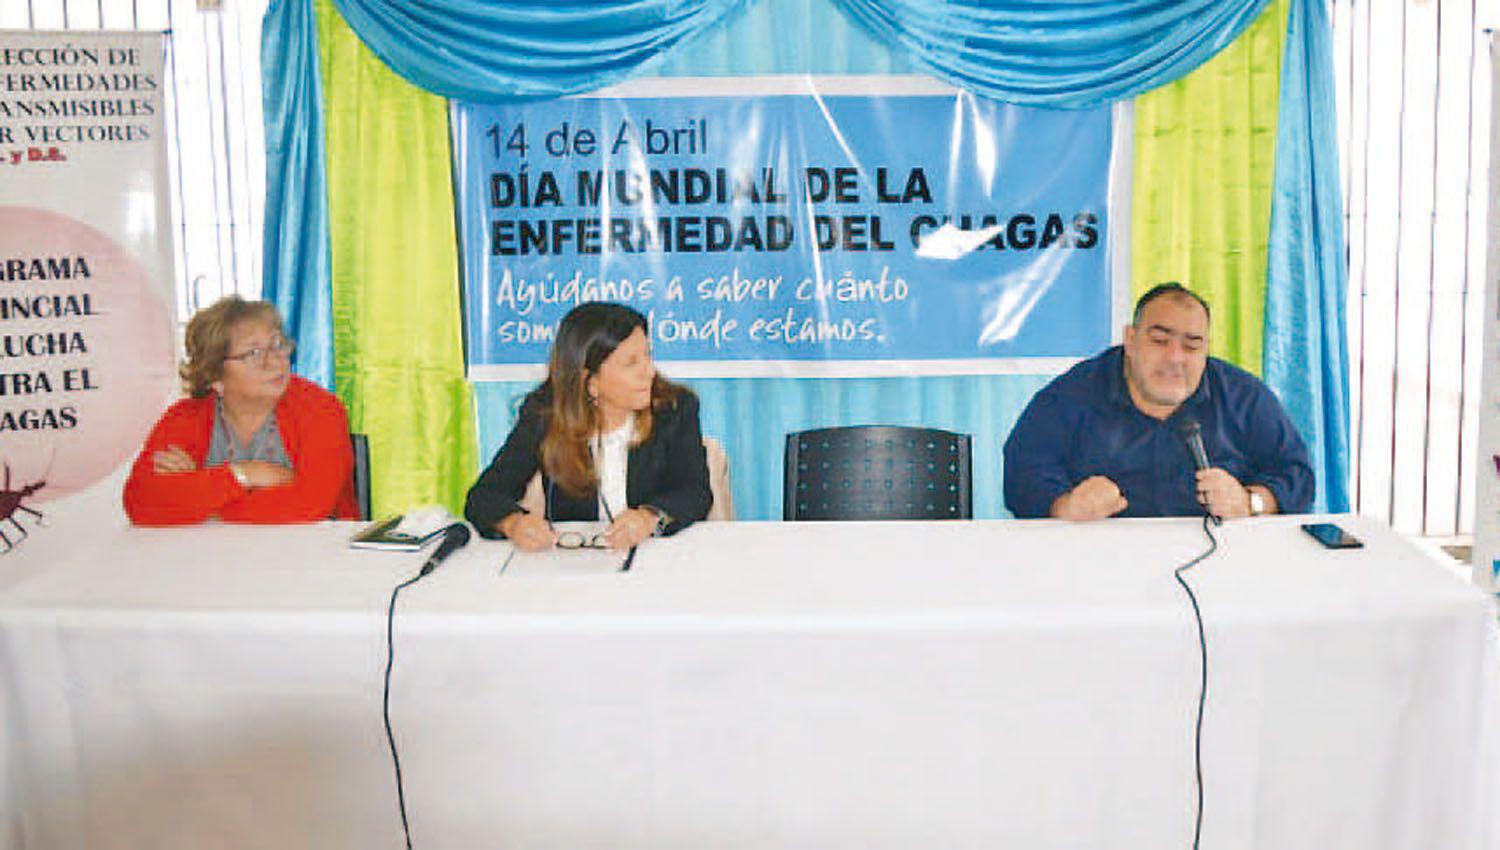 Beltraacuten desarrolloacute una jornada por el Diacutea de la Enfermedad del Chagas